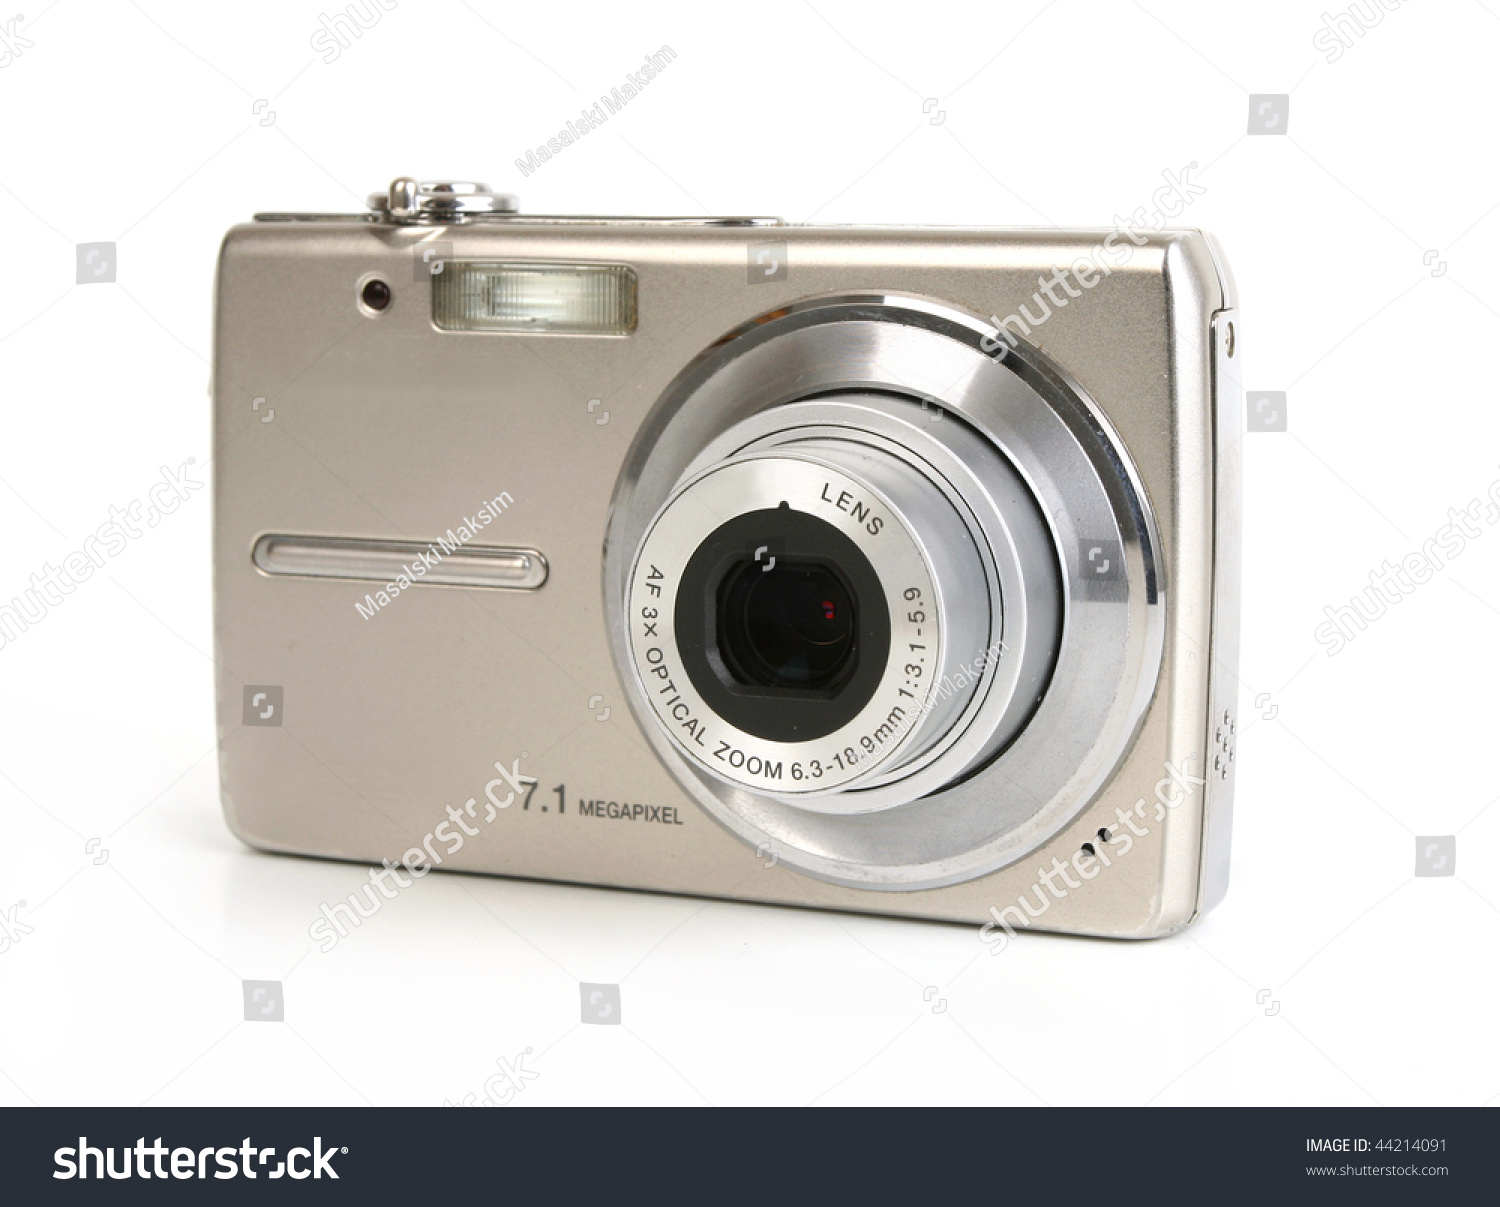 Digital camera isolated on white background #44214091